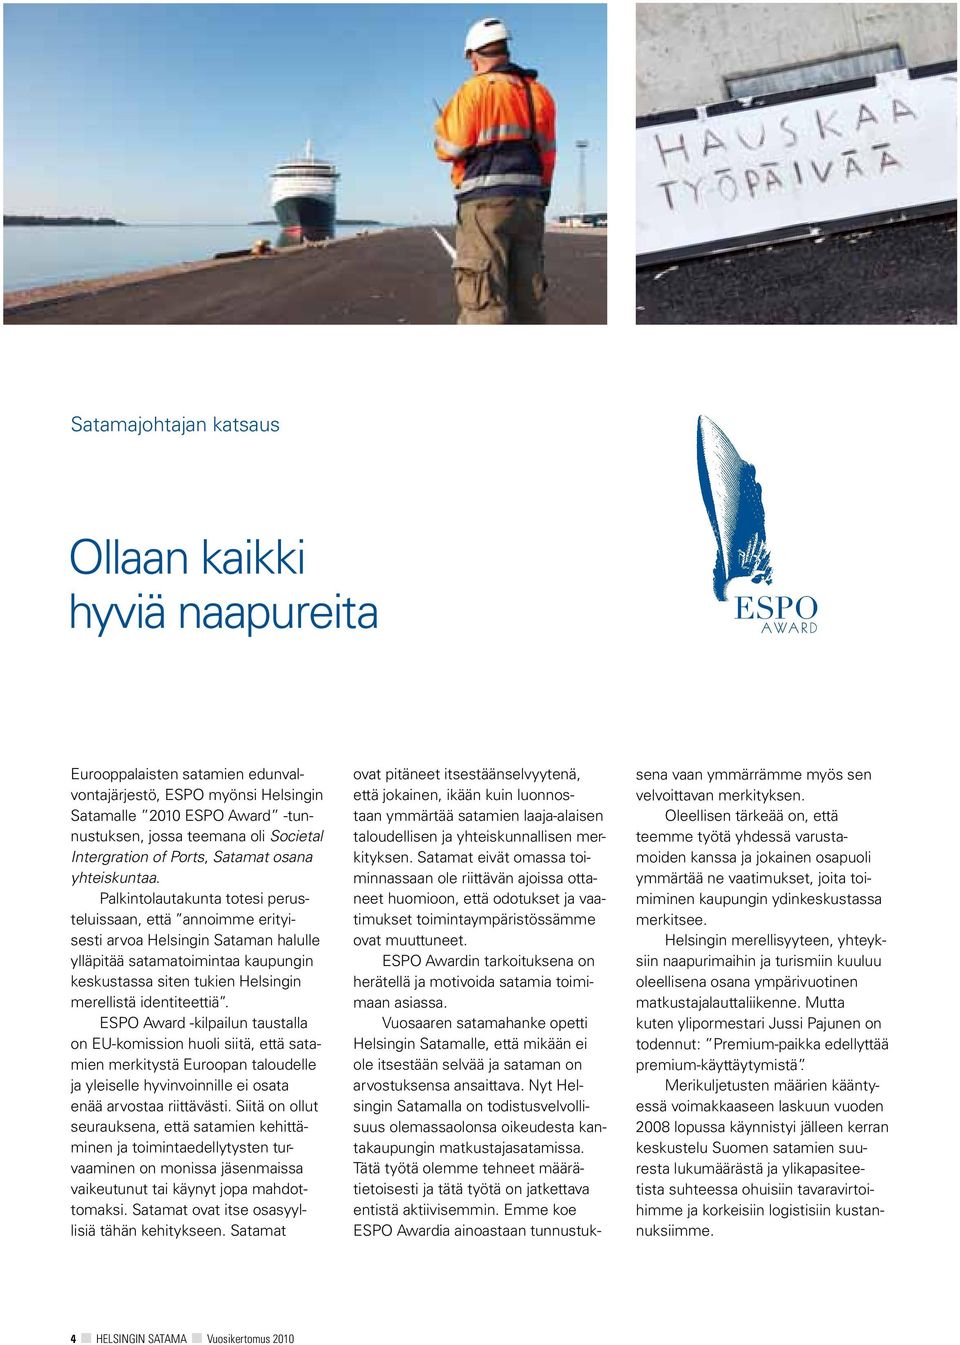 Palkintolautakunta totesi perusteluissaan, että annoimme erityisesti arvoa Helsingin Sataman halulle ylläpitää satamatoimintaa kaupungin keskustassa siten tukien Helsingin merellistä identiteettiä.